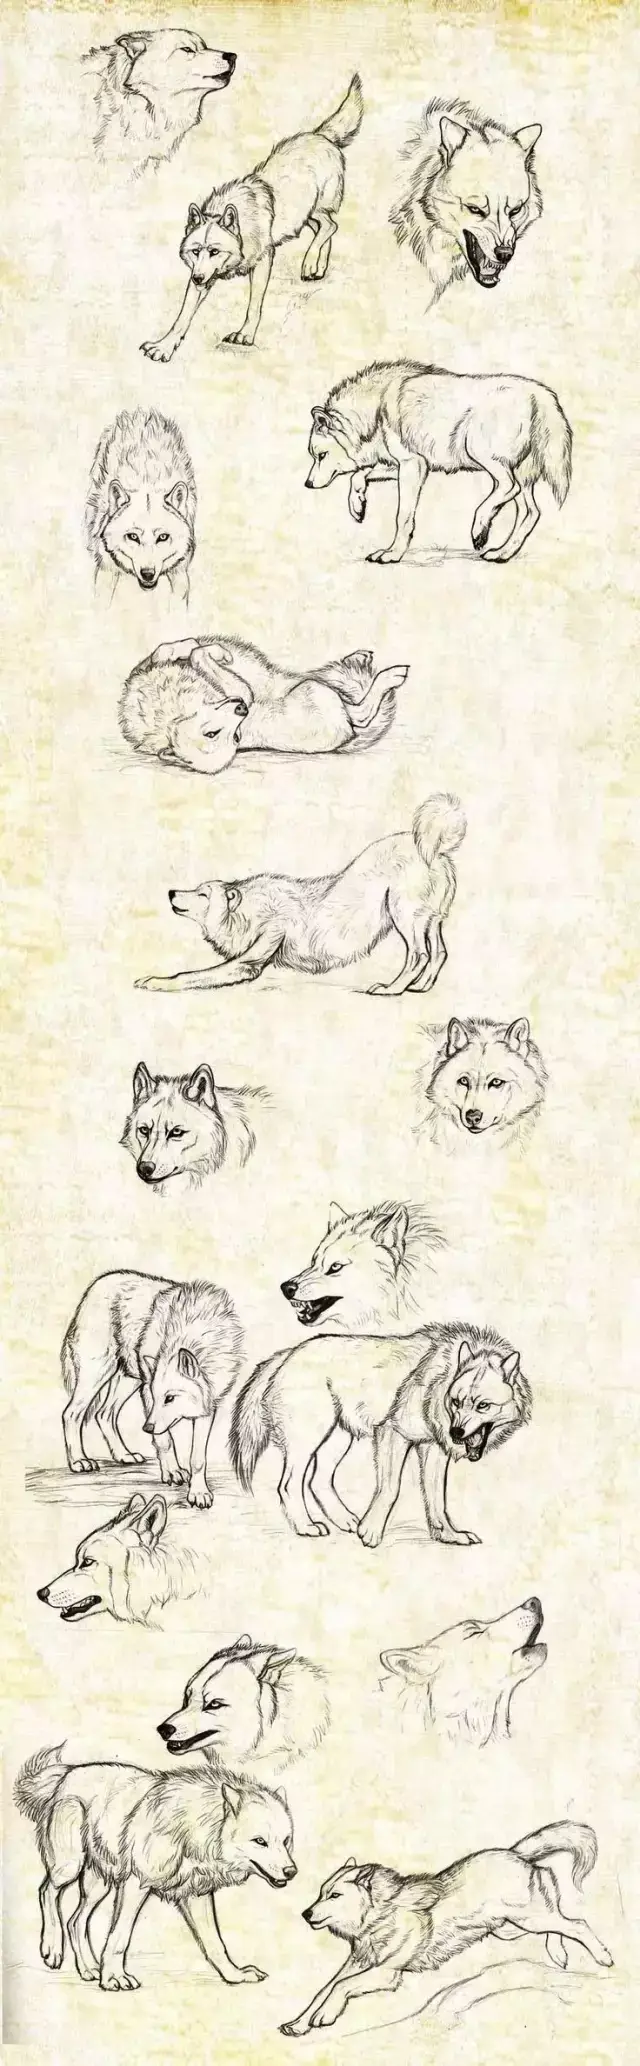 狼的画法研究图片,不会画狼的同学赶紧收藏吧!